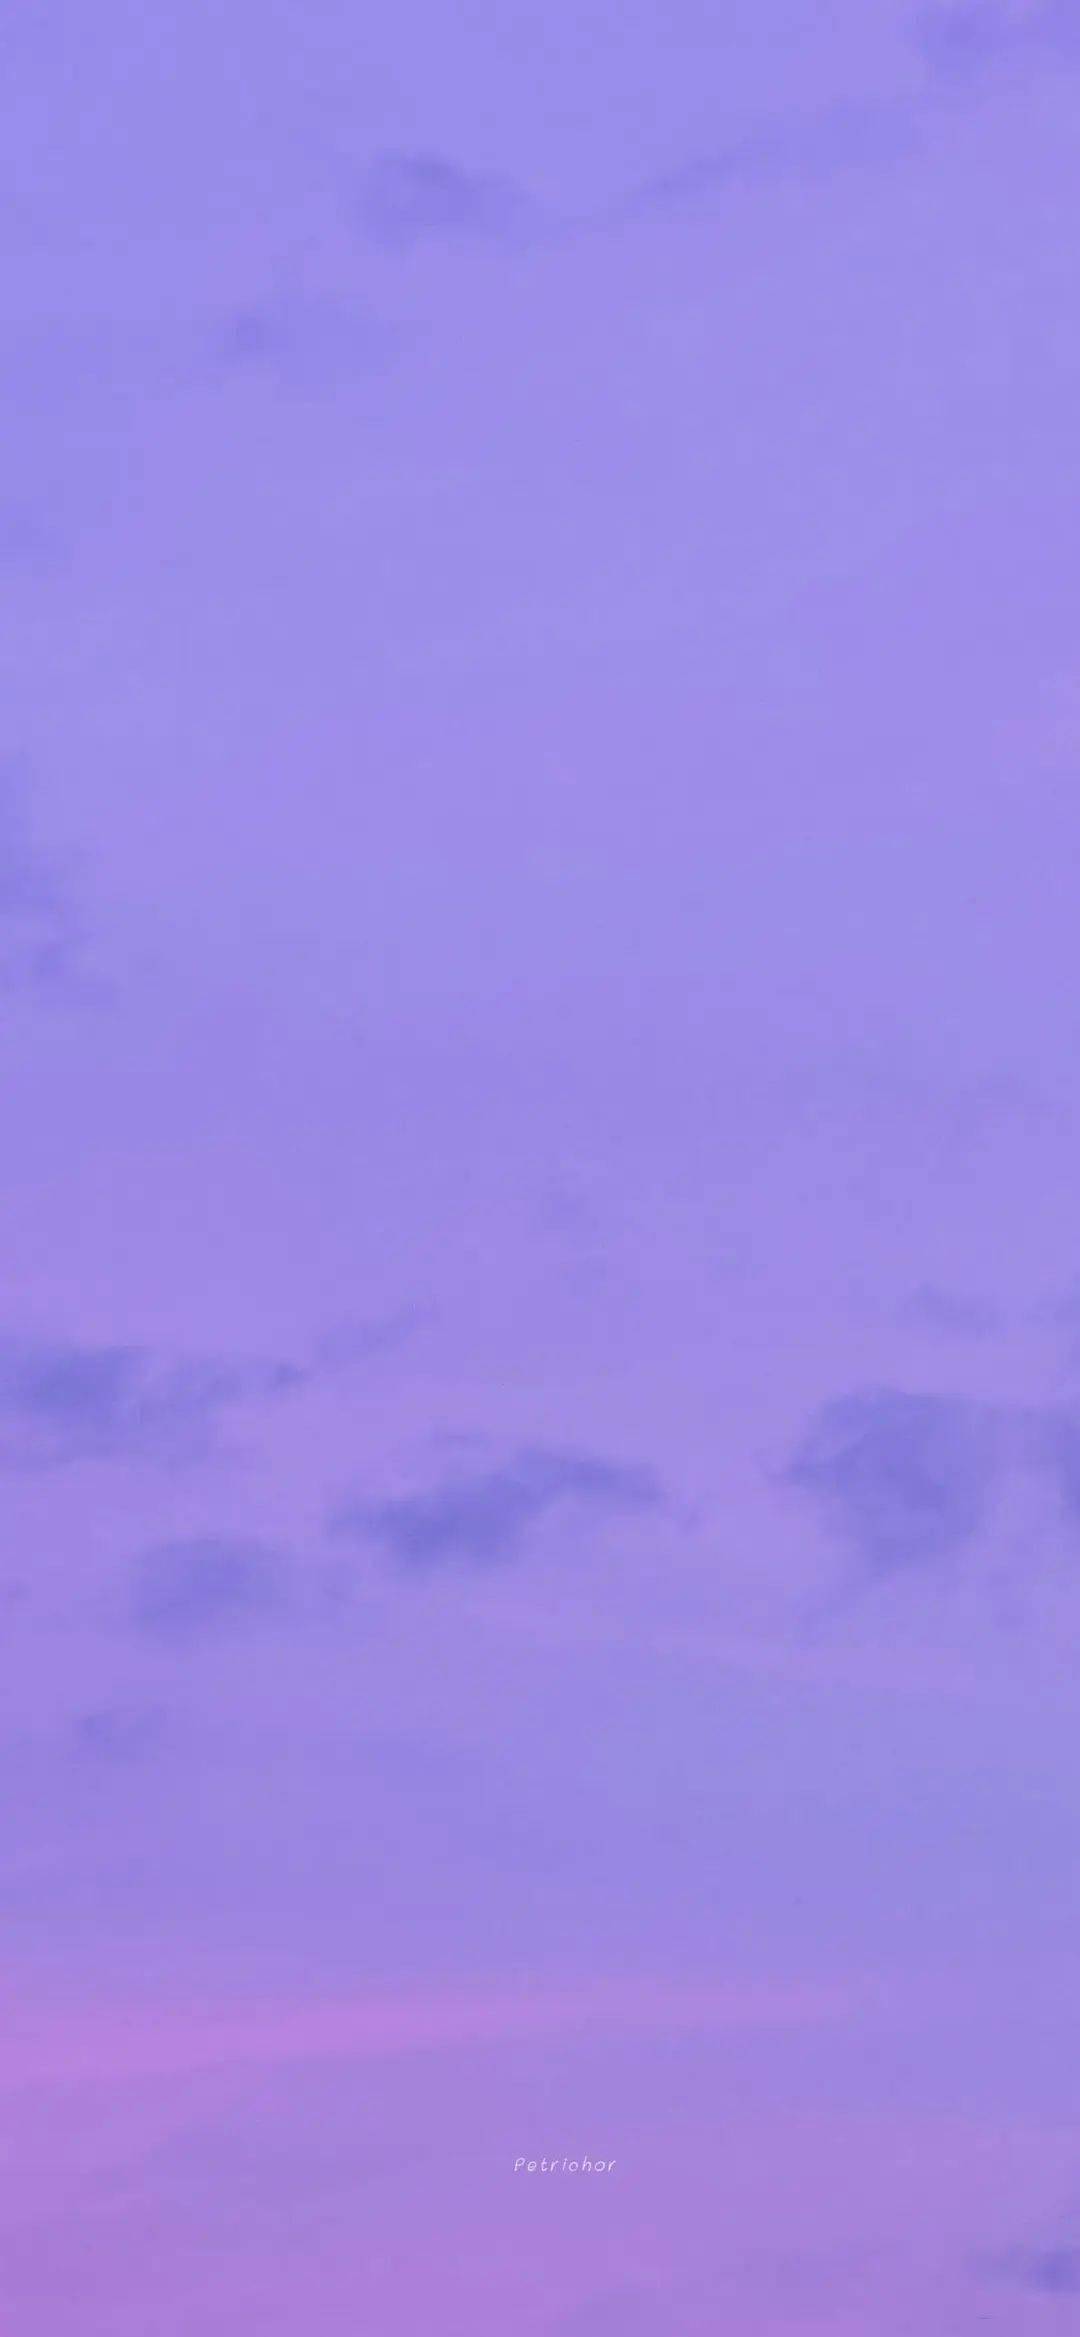 紫色滤镜的微信/qq聊天背景壁纸,给浪漫的你~